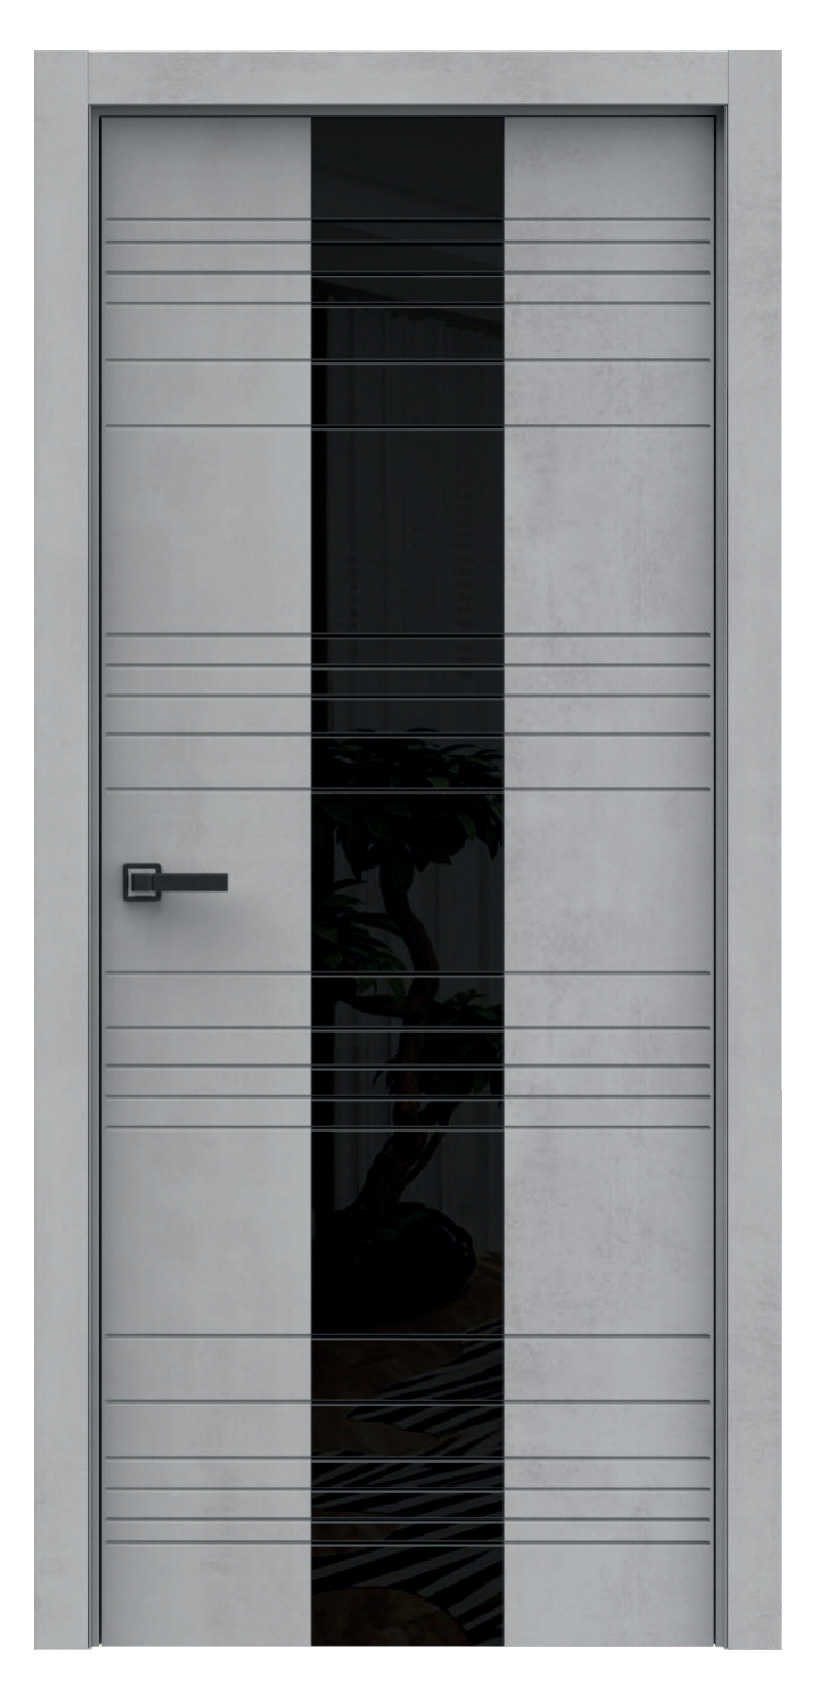 Questdoors Межкомнатная дверь QMS7, арт. 17896 - фото №1